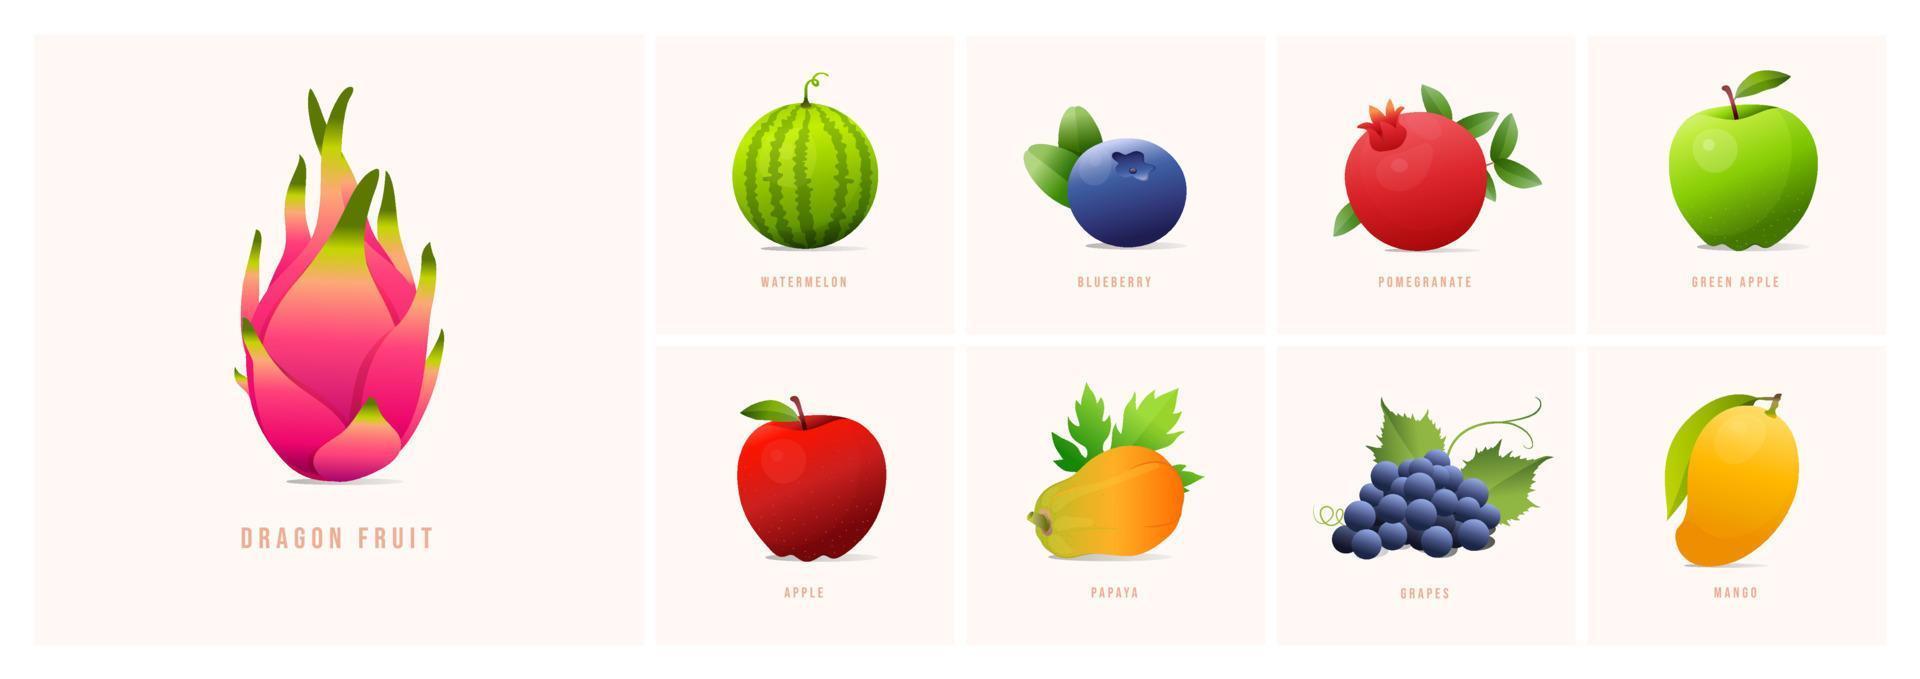 conjunto de frutas, ilustraciones de vectores de estilo moderno. uvas, sandía, arándano, granada, papaya, manzana, mango, manzana verde, fruta del dragón, etc.